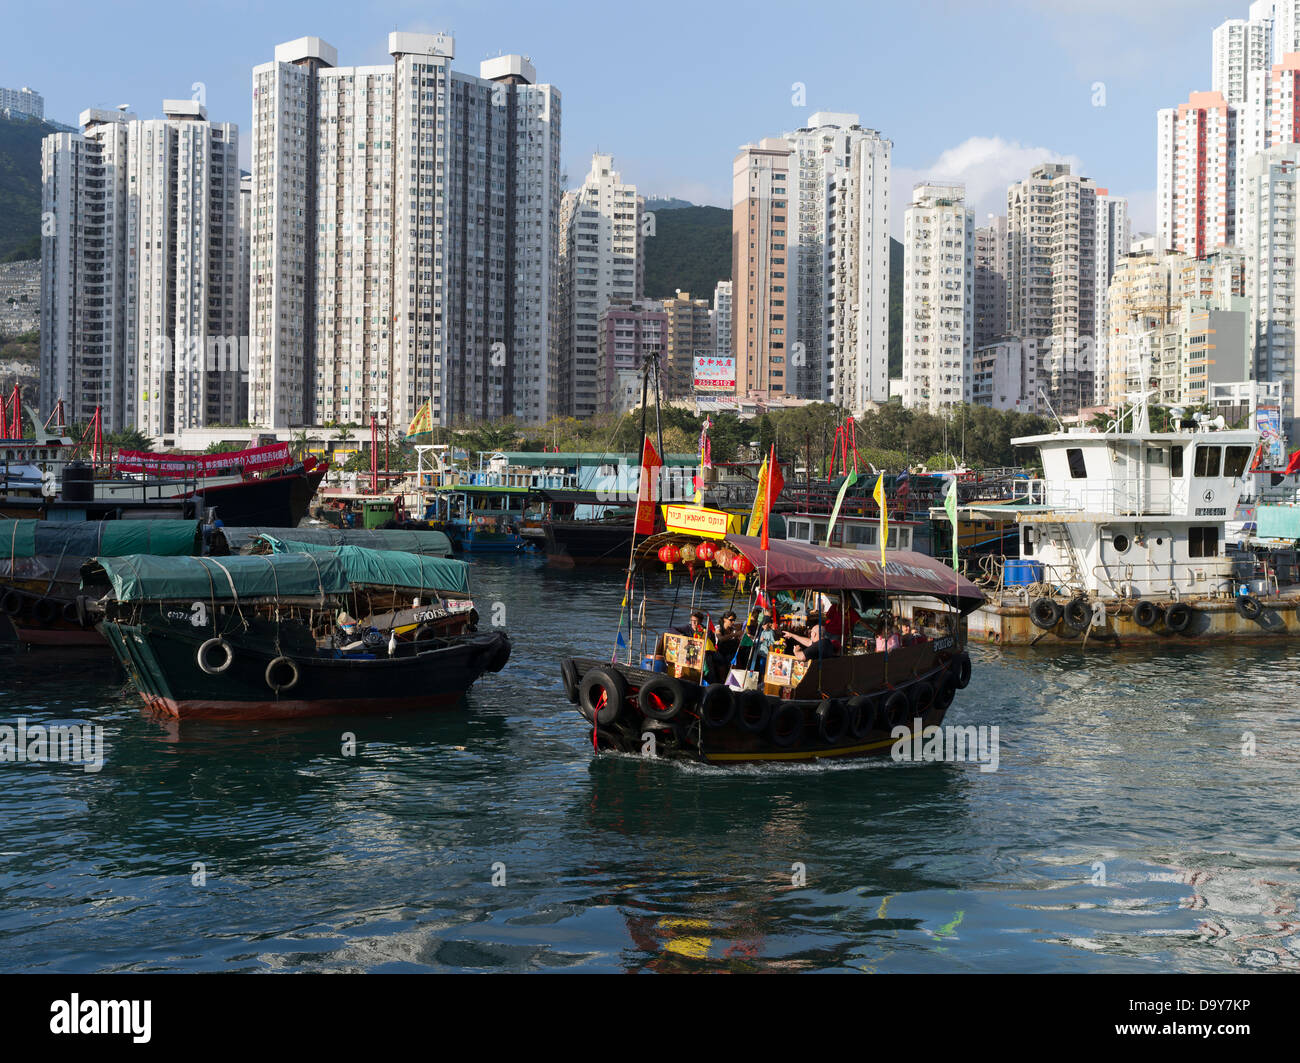 dh Chinois sampan ABERDEEN HARBOUR HONG KONG ASIE High lever résidentiel gratte-ciel appartements bateaux île Banque D'Images